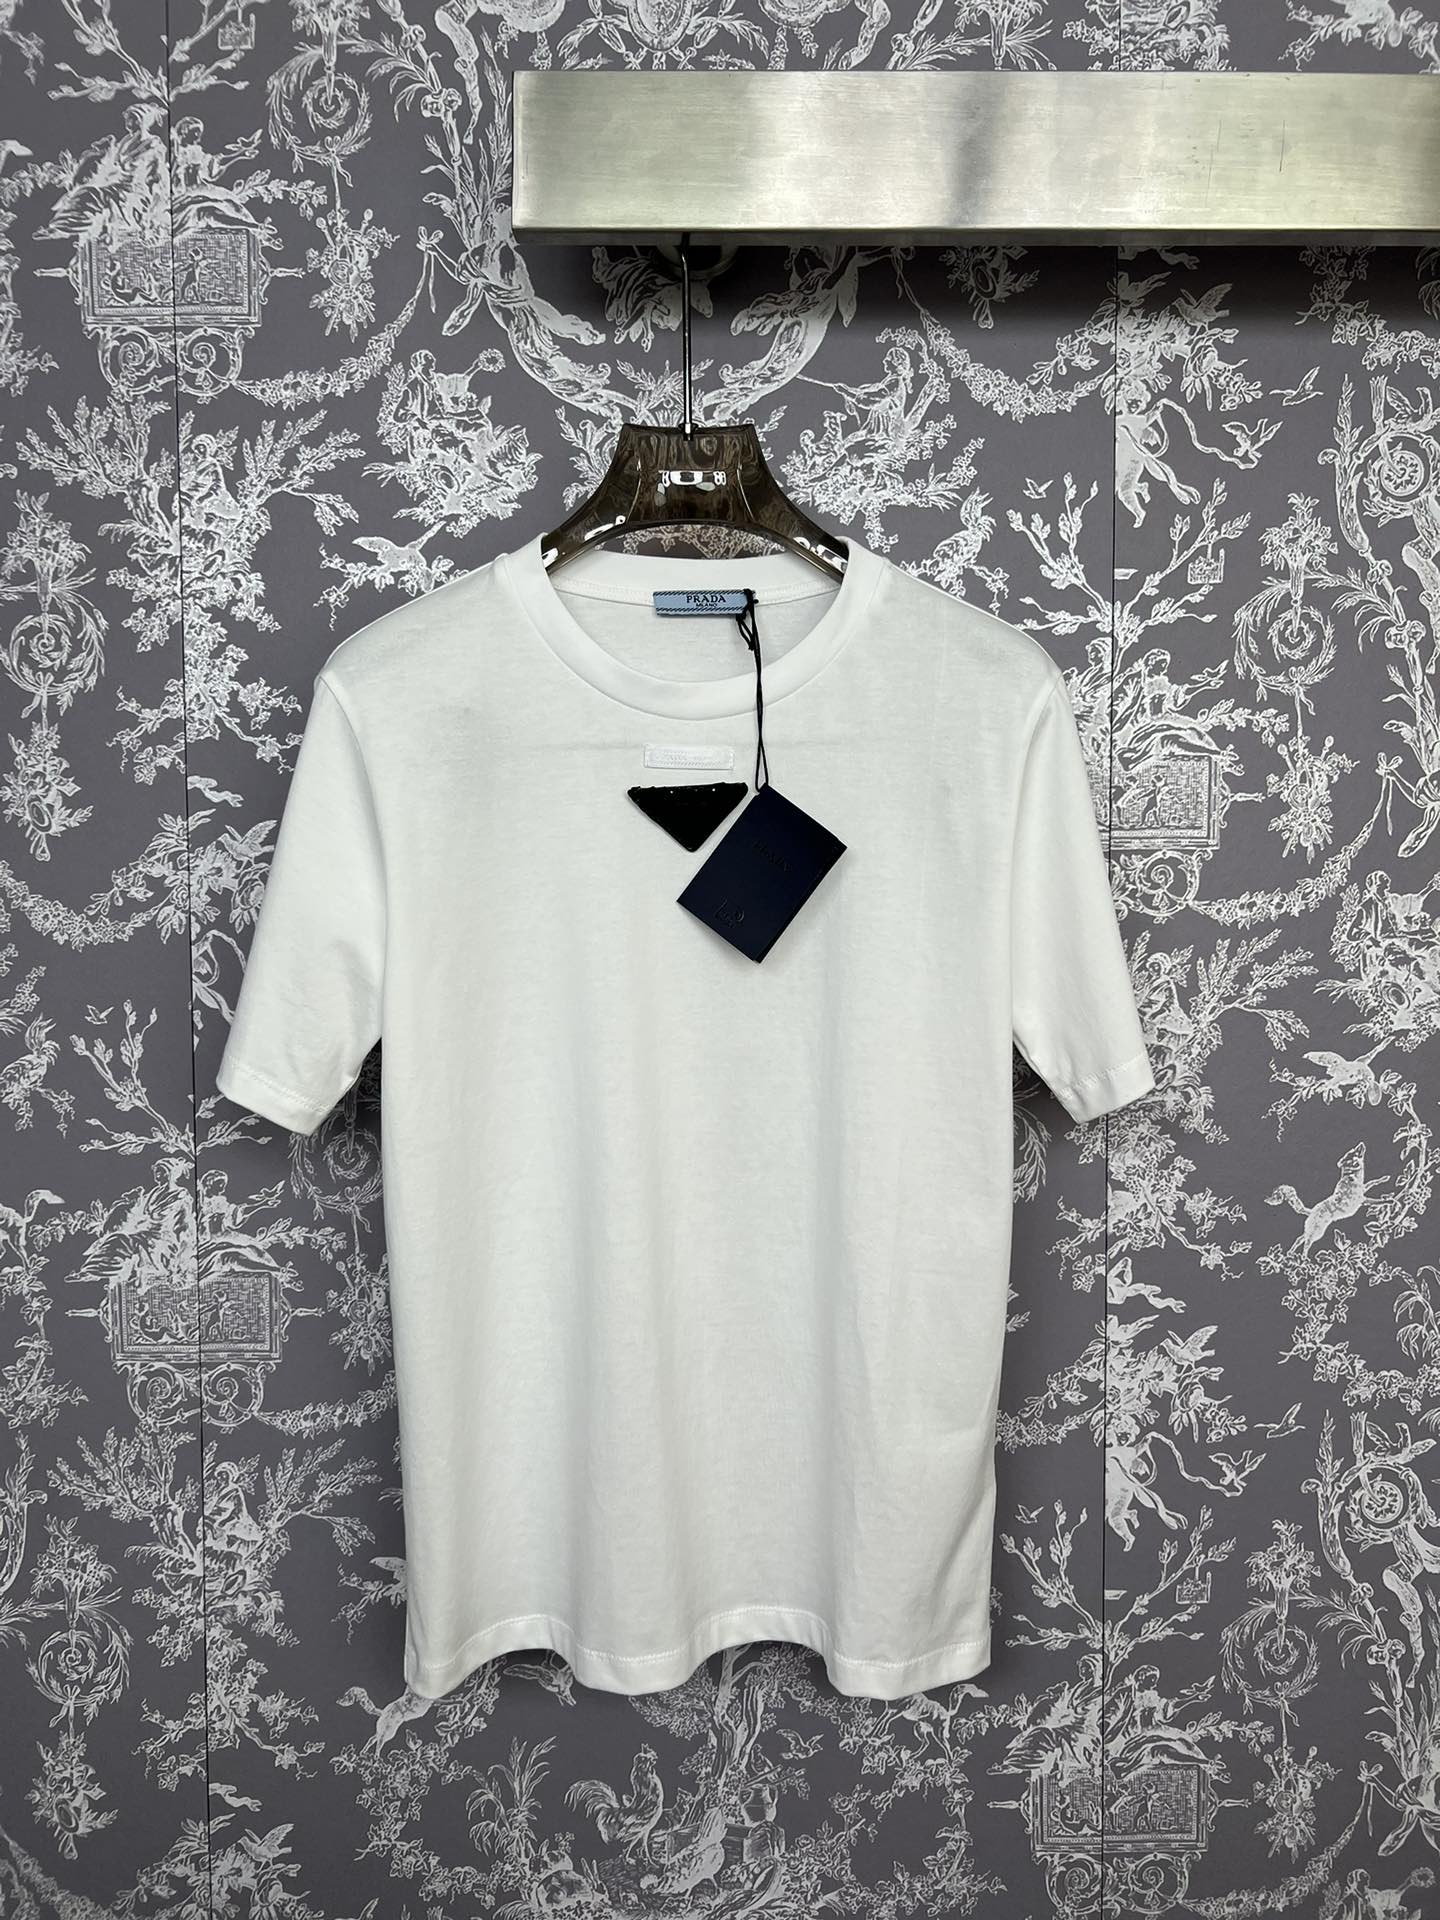 Comment trouver des répliques de boutique
 Prada Vêtements T-Shirt Vente en ligne
 Serti diamants Coton Série d’été